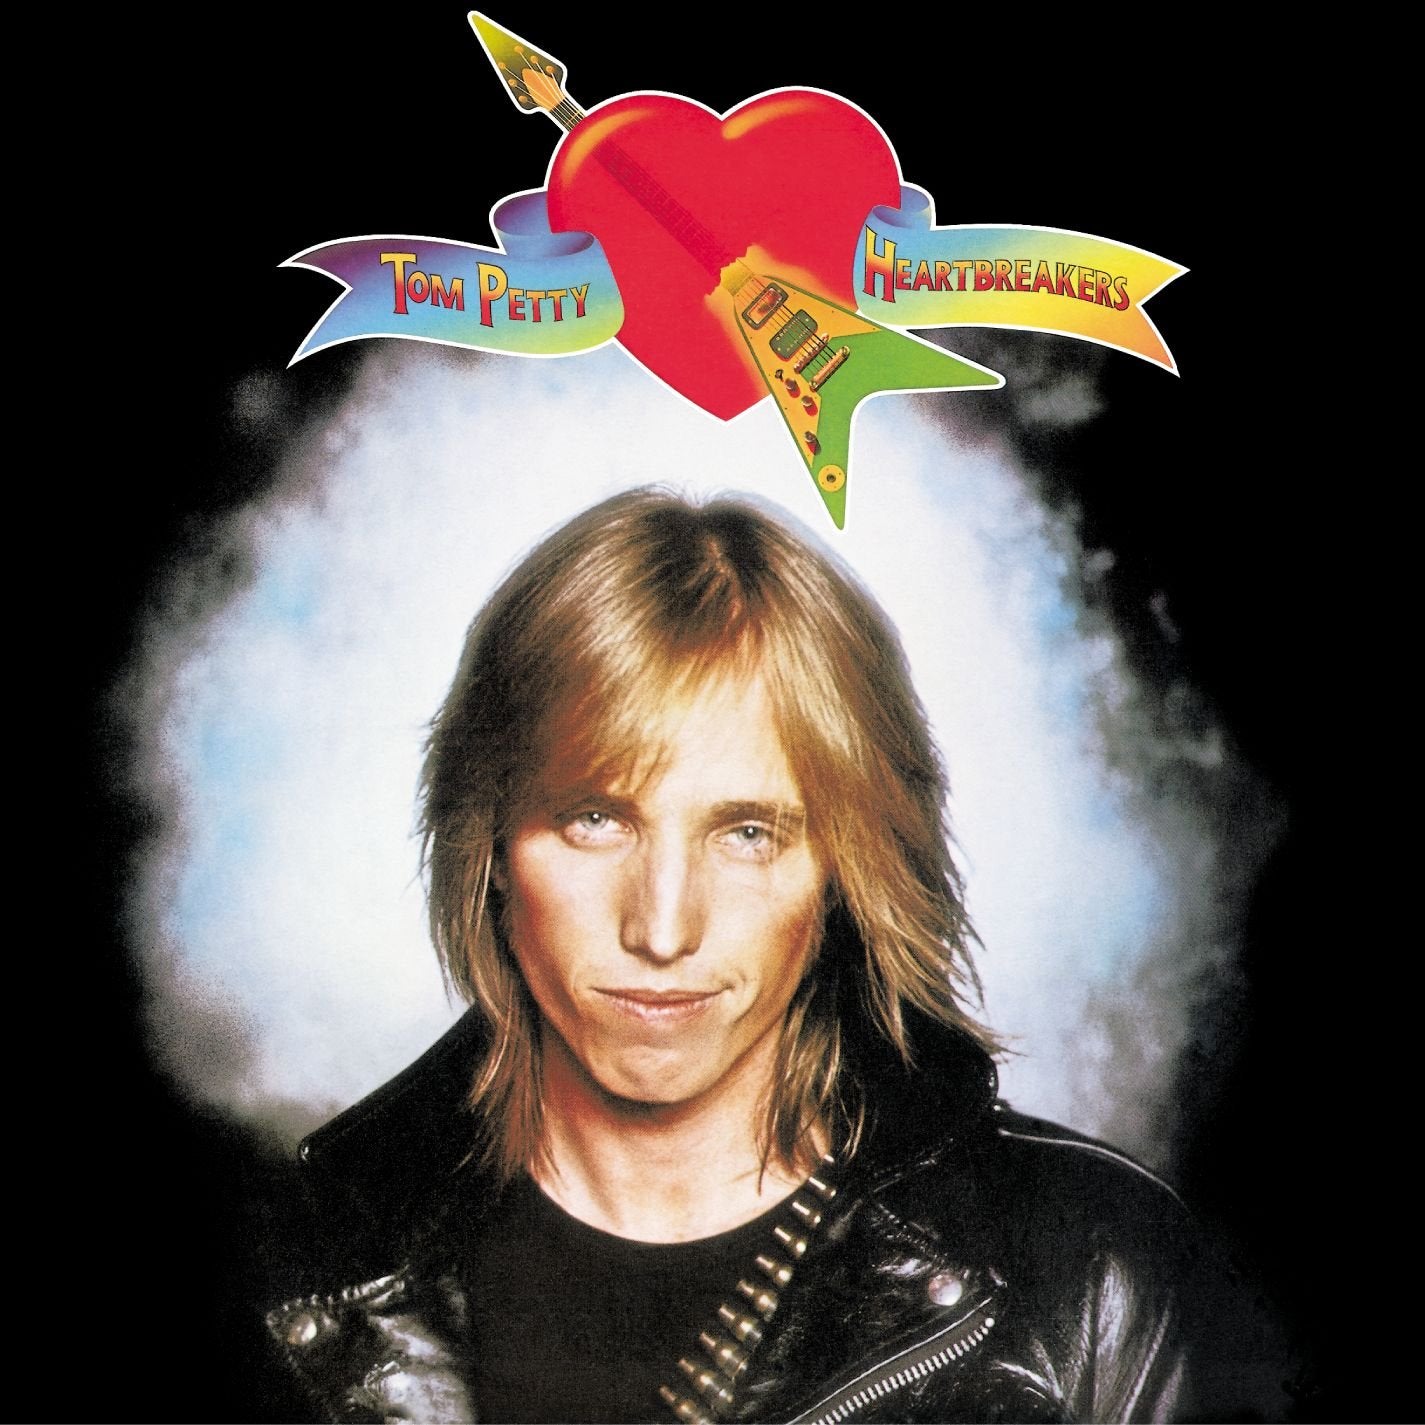 Tom Petty & The Heartbreakers - Tom Petty & The Heartbreakers LP